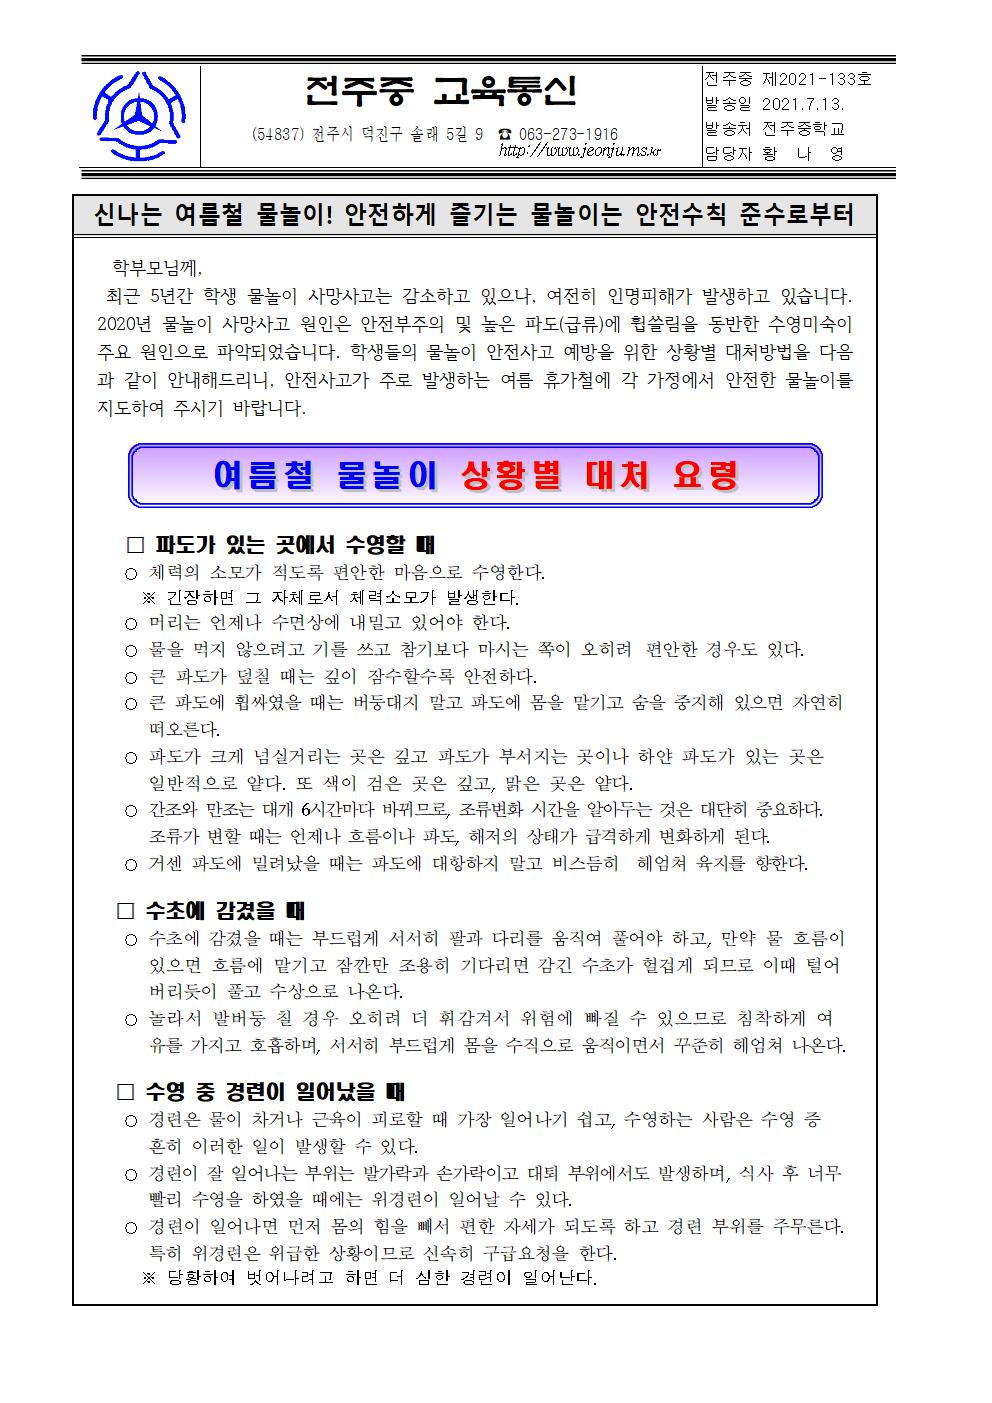 2021년 여름철 물놀이 상황별 대처 요령 안내 가정통신문(7.13001